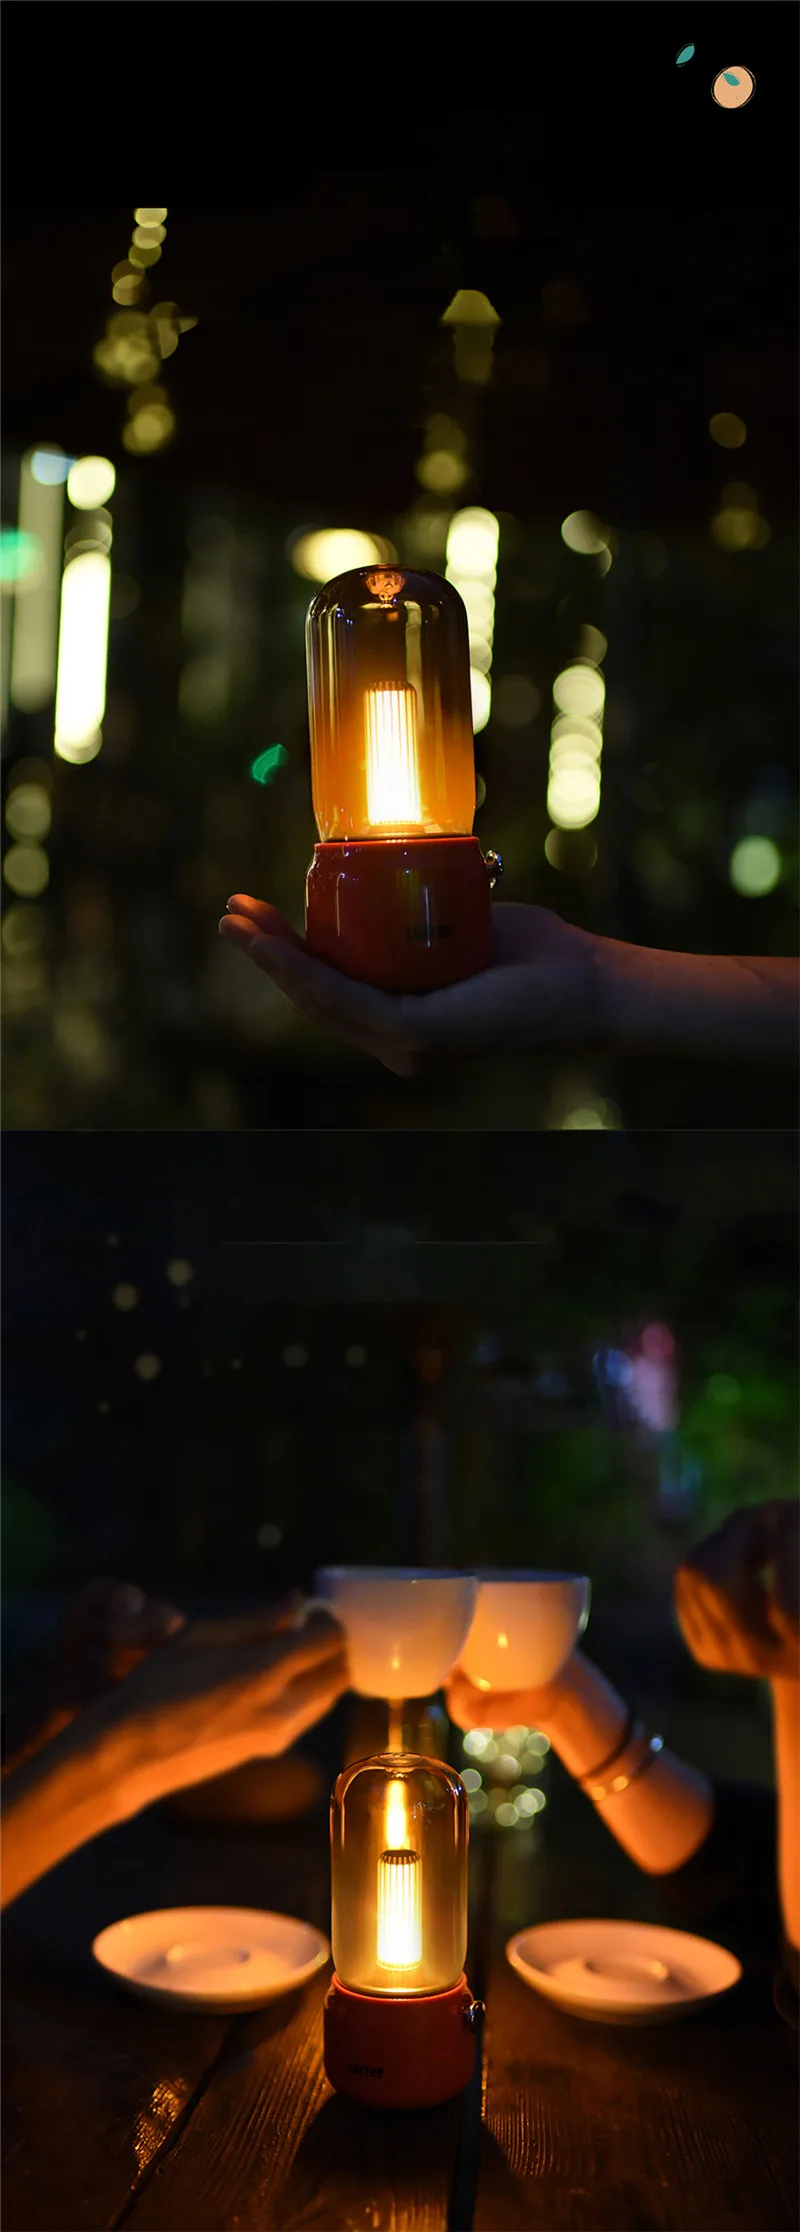 מנורת נר לילה בעיצוב רטרו דקורטיבי מבית לופרי